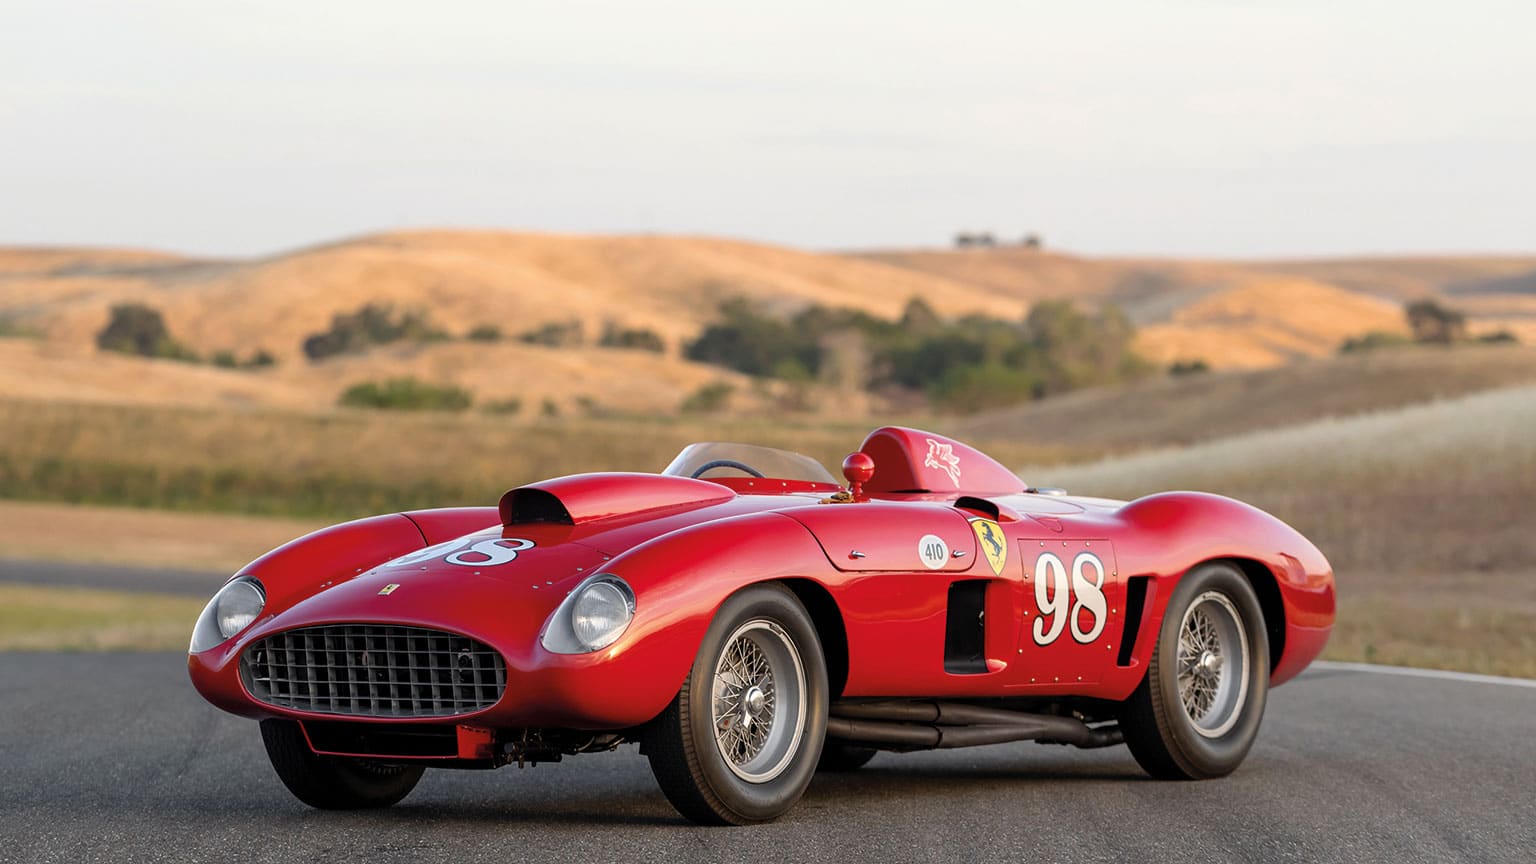 1955 Ferrari 410